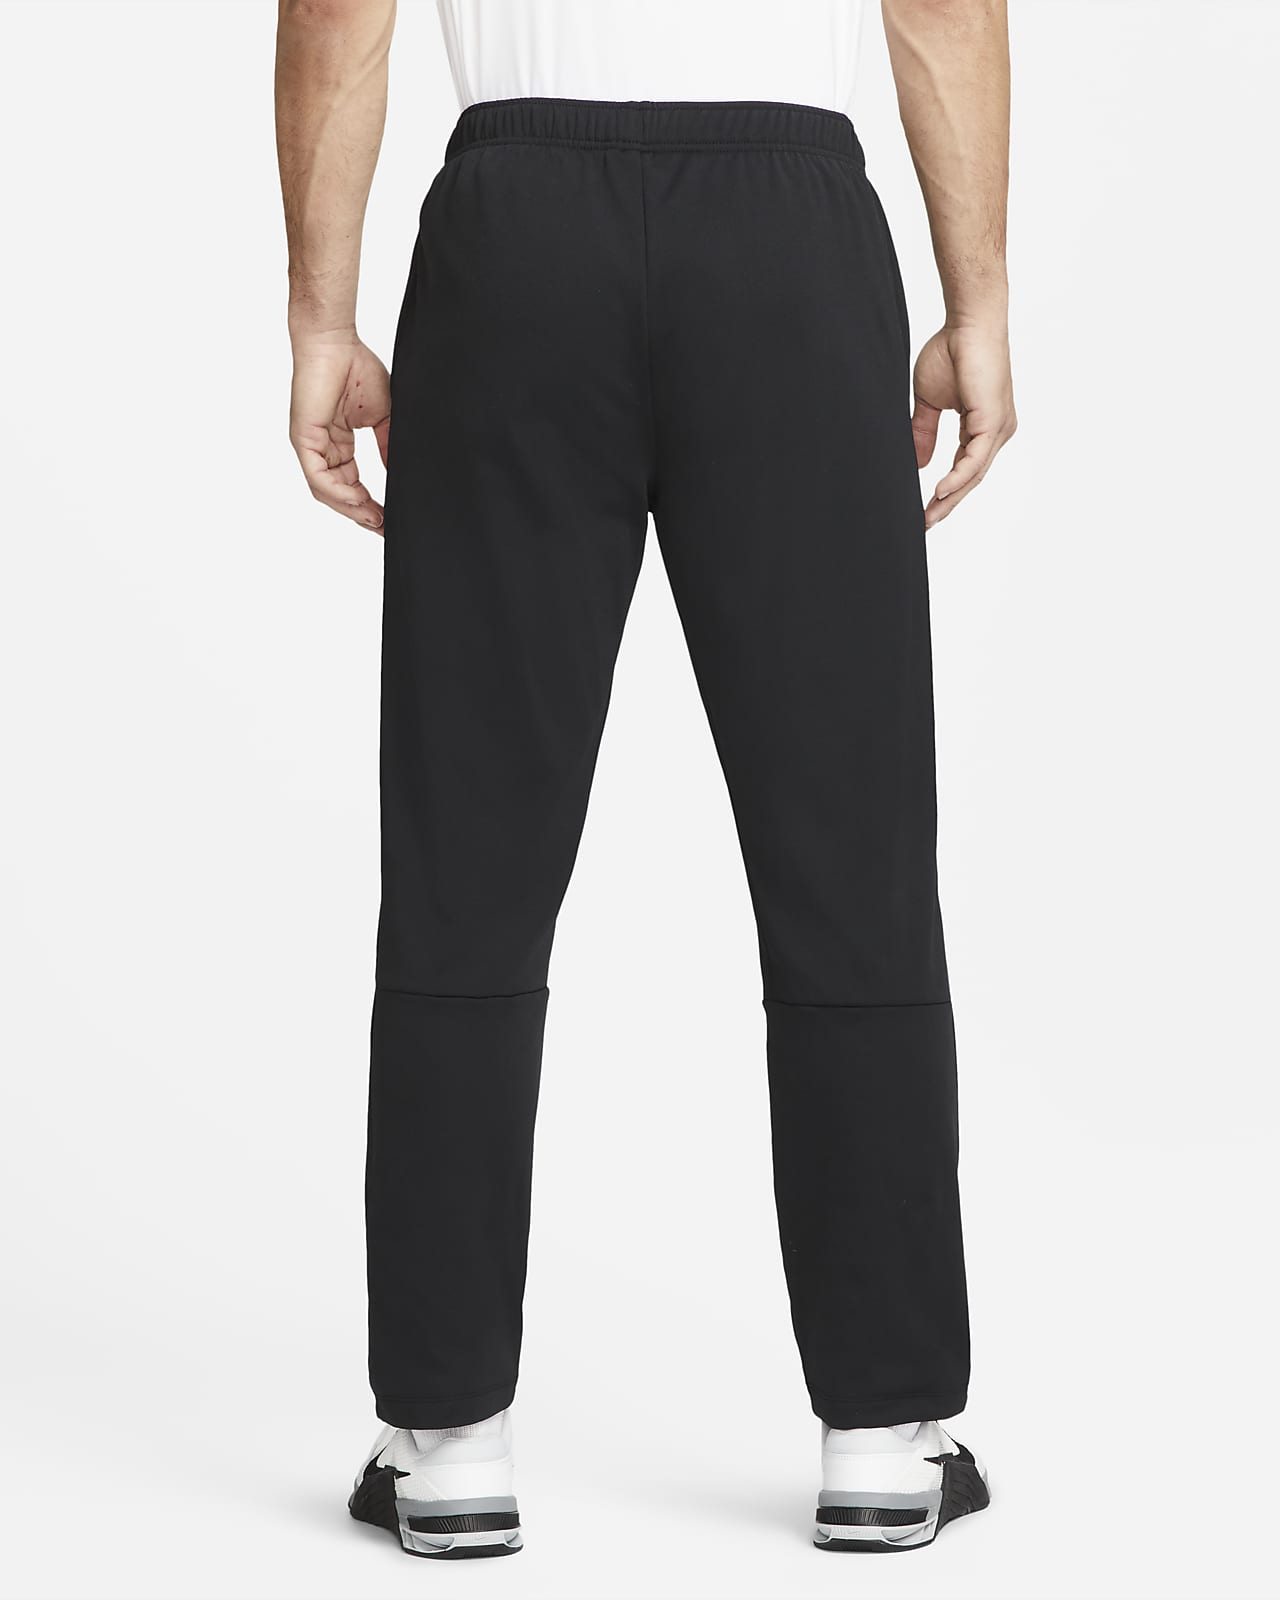 Quần Nike Dri-FIT Men's Tapered Fleece Training Pants Black 860371-010 – Hệ  thống phân phối Air Jordan chính hãng